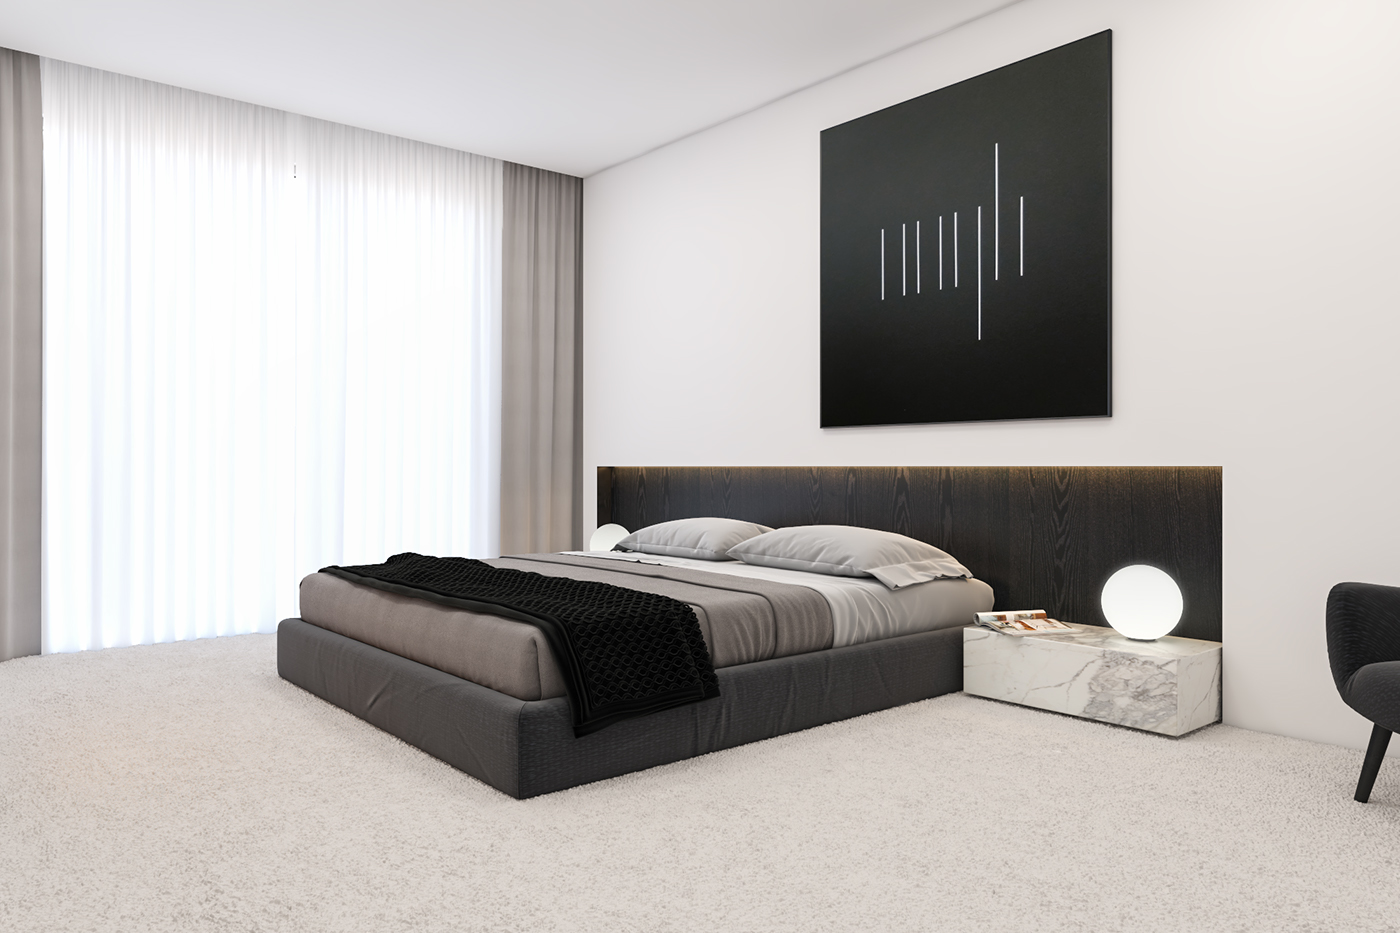 concept design Interior White black minimal apartment home interiordesign architecture